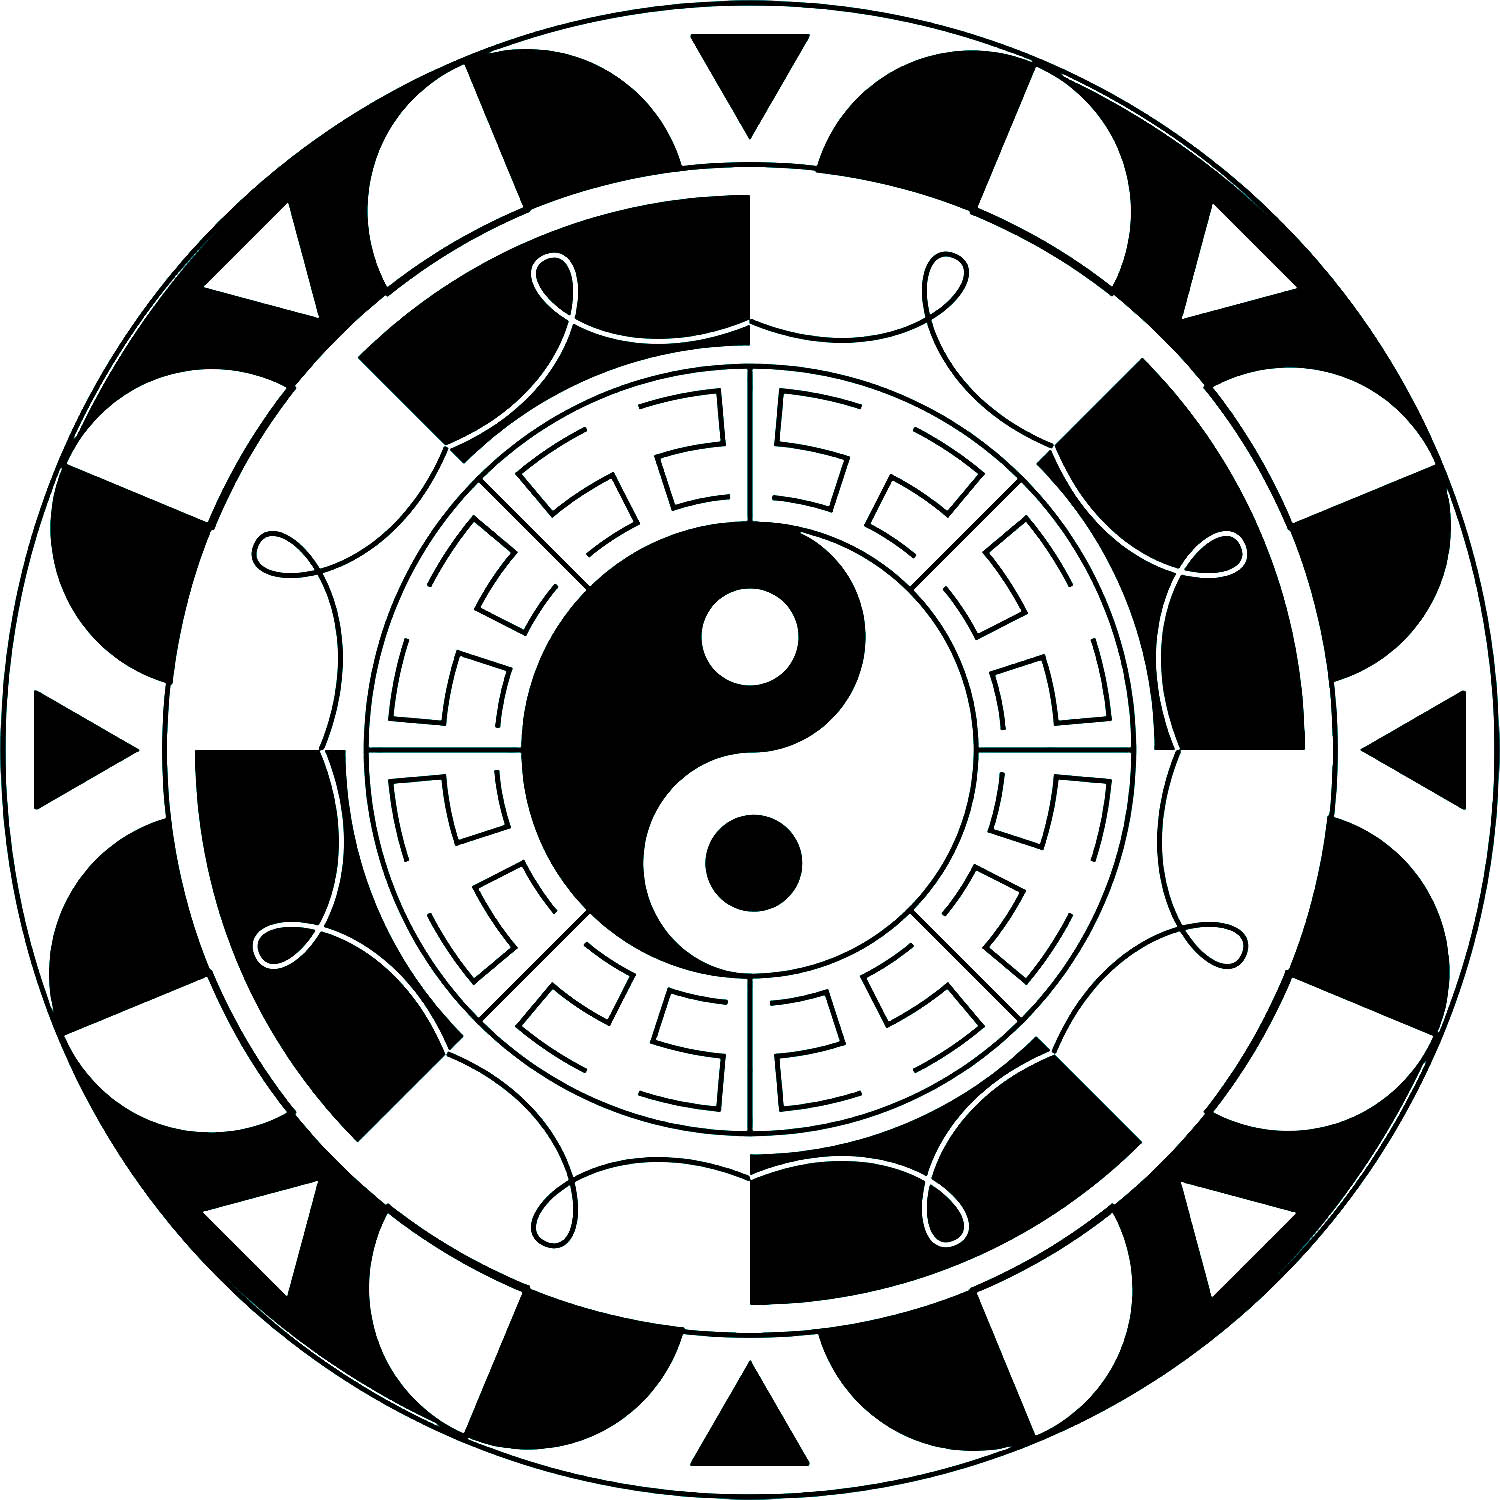 Mandala con pocos detalles y el símbolo del Yin y el Yang en el centro